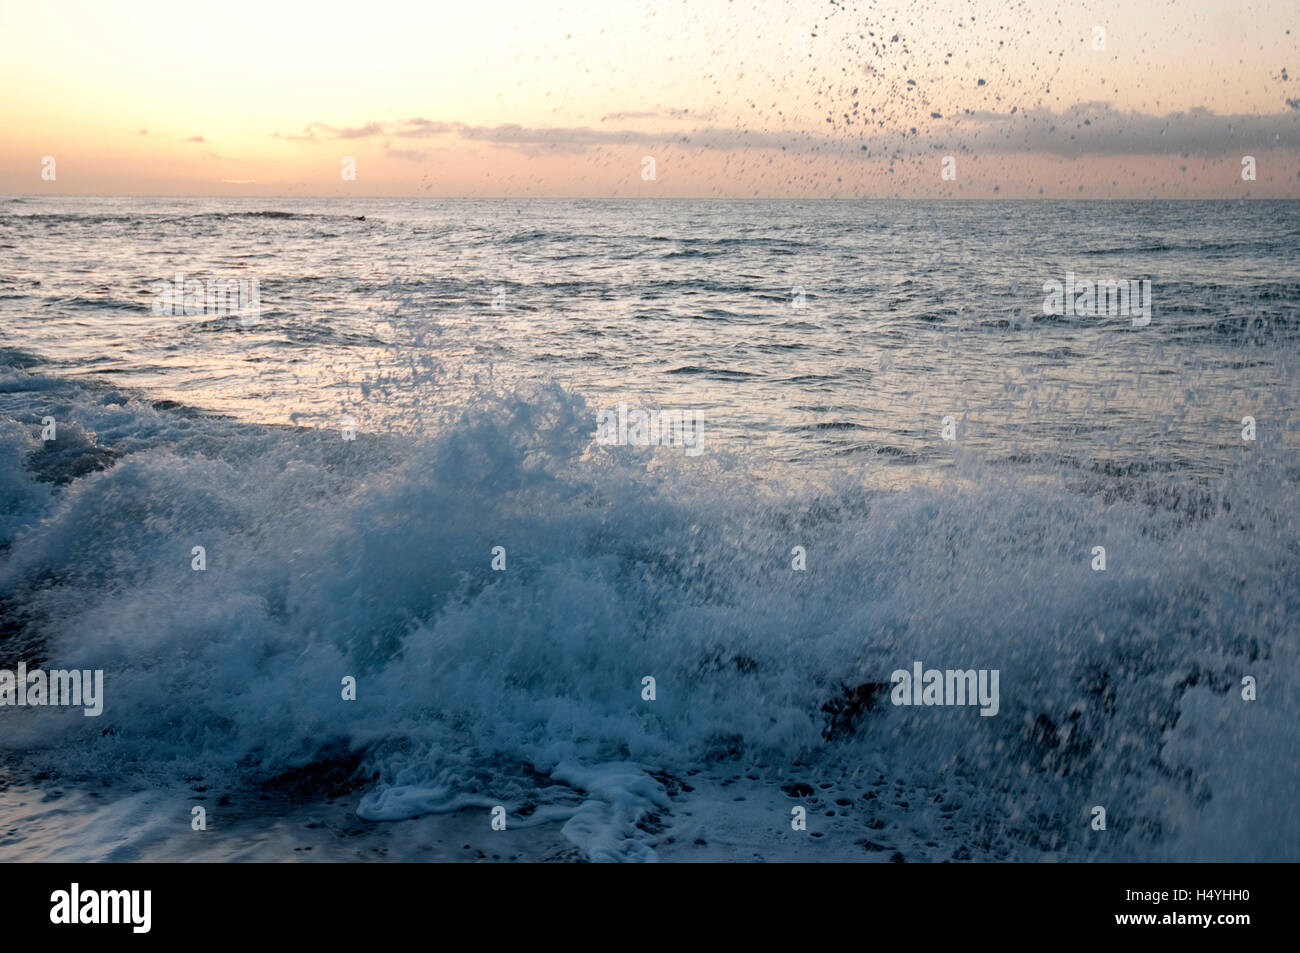 L'eau et des vagues sur la côte, surf, sunrise, d'Azur, Ligurie, Italie, Europe Banque D'Images